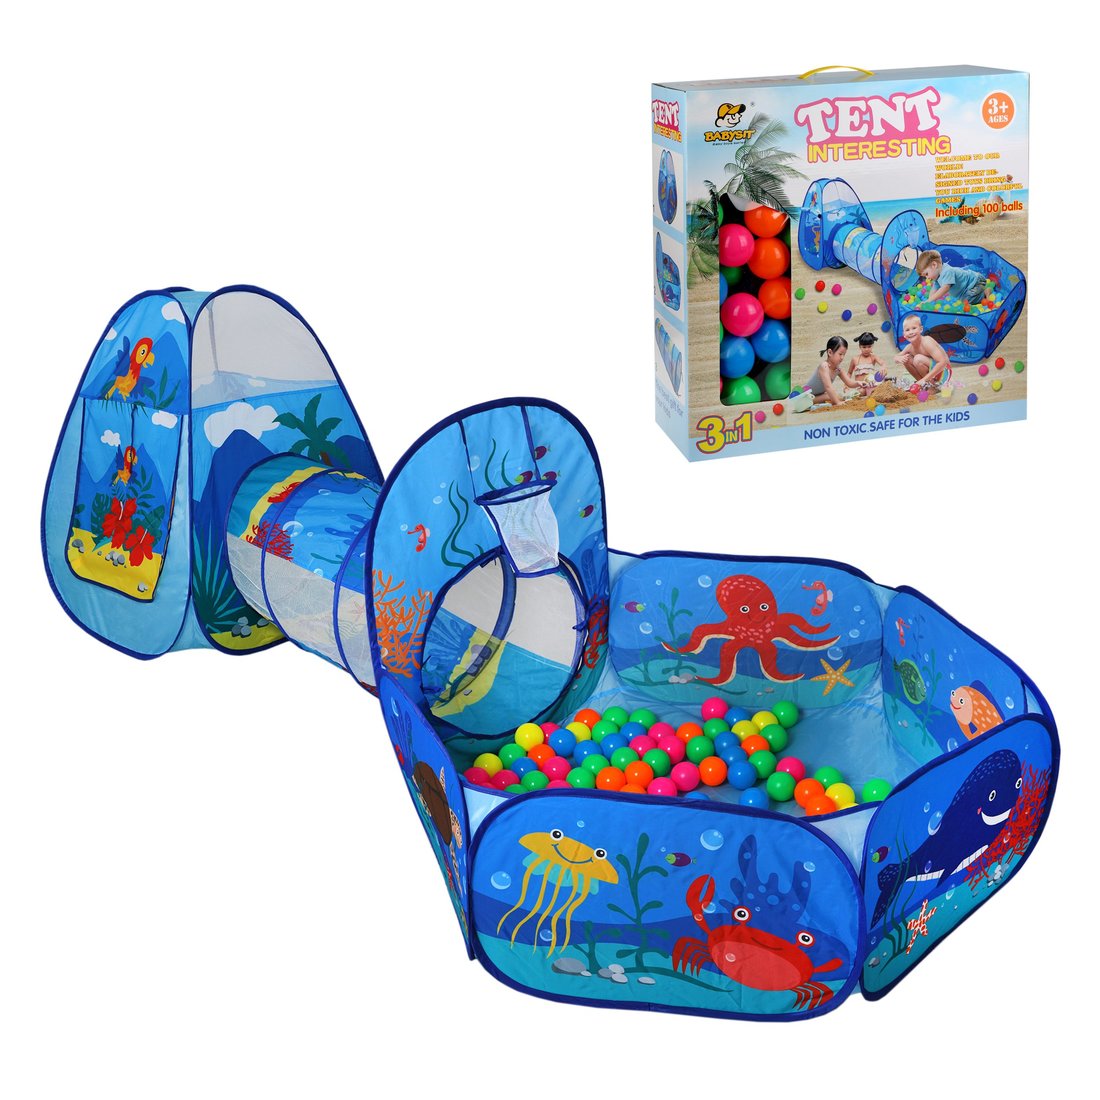 Игрушка, вмещающая в себя ребенка: Игровой комплекс, в комплекте пластмассовые шарики 100 шт.